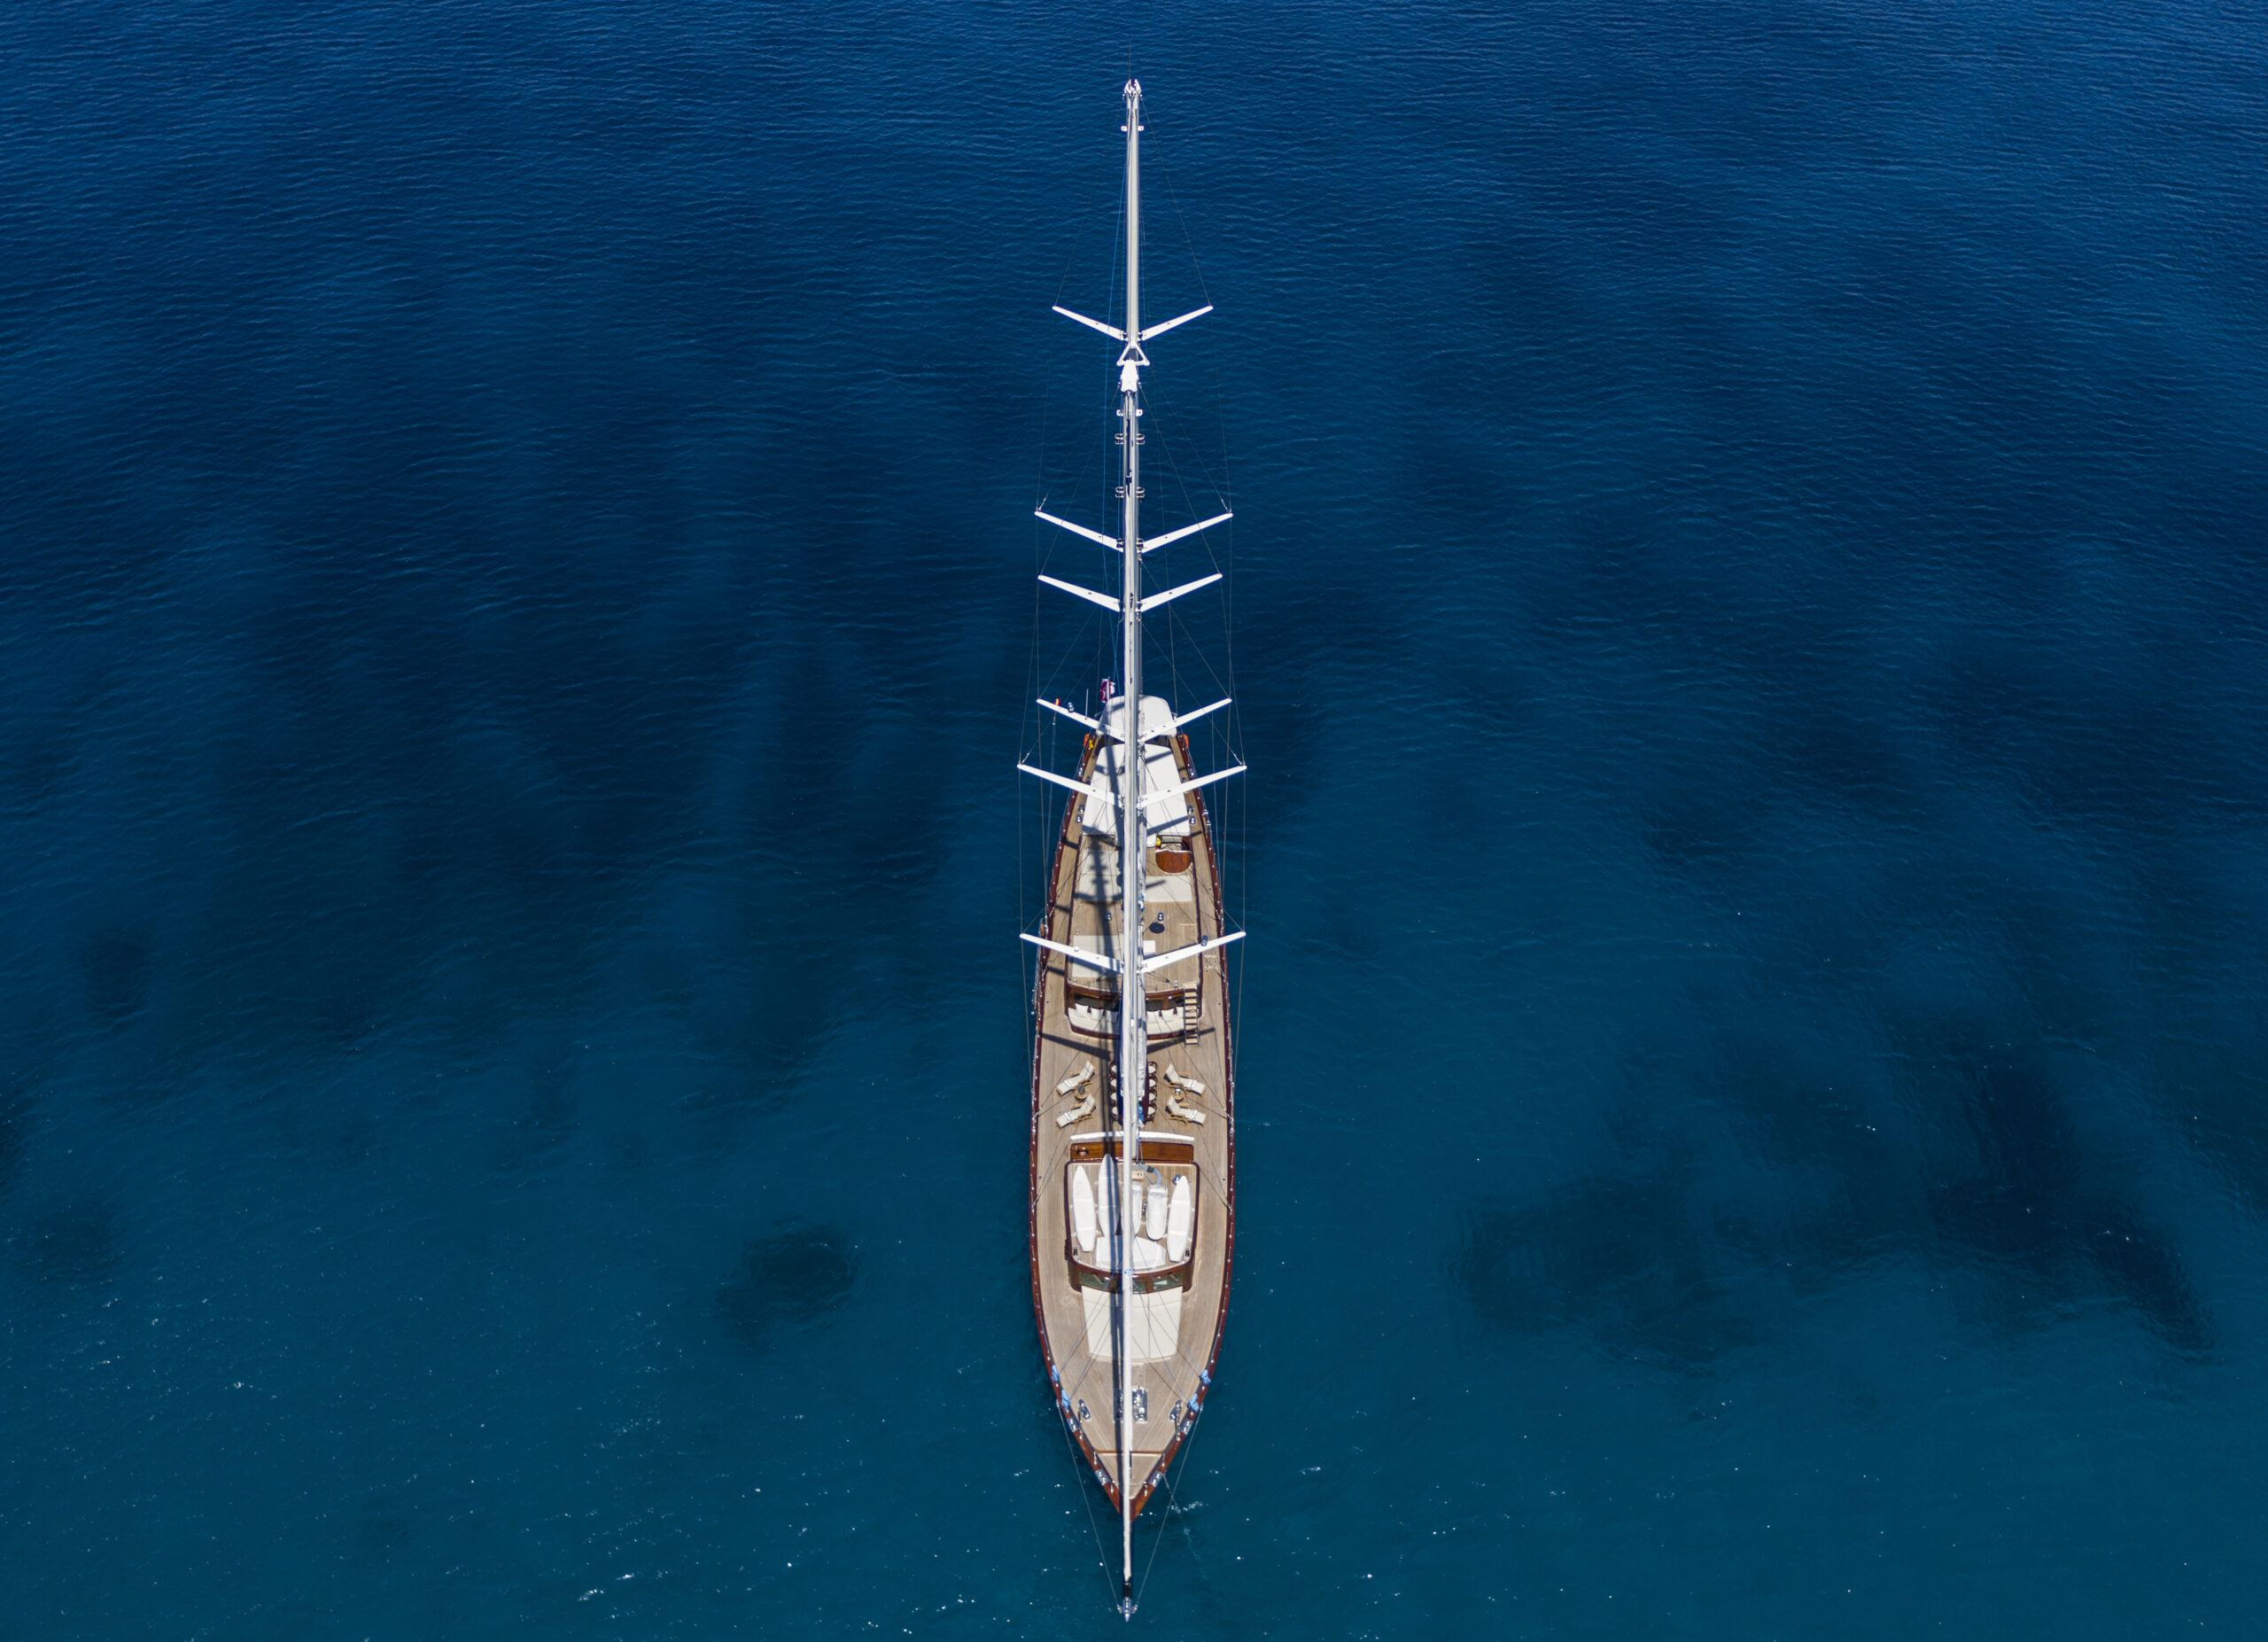 where are neptunus yachts built